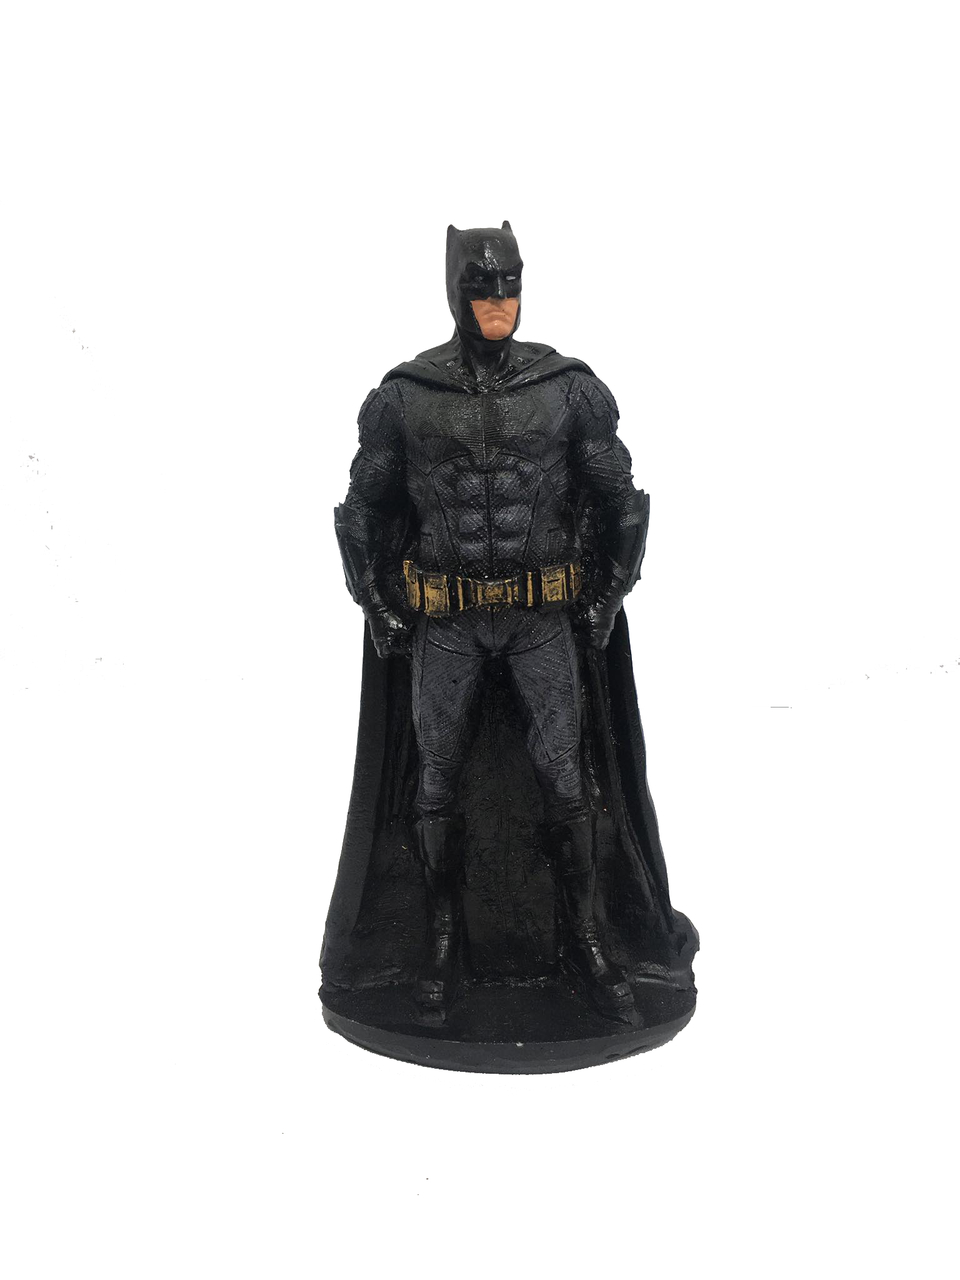 Boneco Batman Liga da Justiça Figura de Ação 18cm Resina